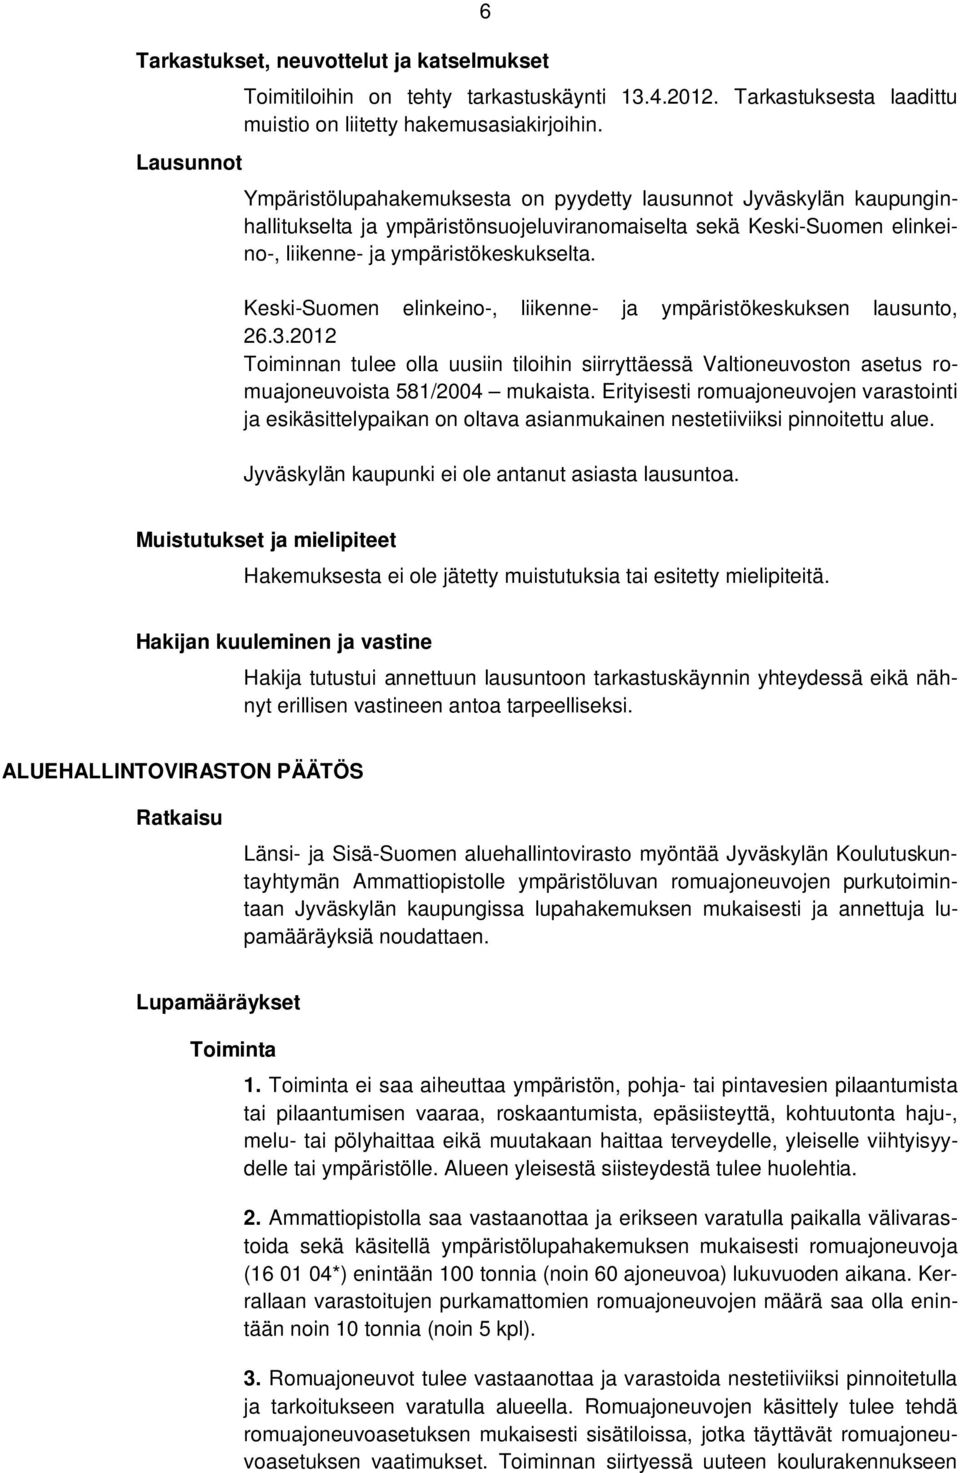 Keski-Suomen elinkeino-, liikenne- ja ympäristökeskuksen lausunto, 26.3.2012 Toiminnan tulee olla uusiin tiloihin siirryttäessä Valtioneuvoston asetus romuajoneuvoista 581/2004 mukaista.